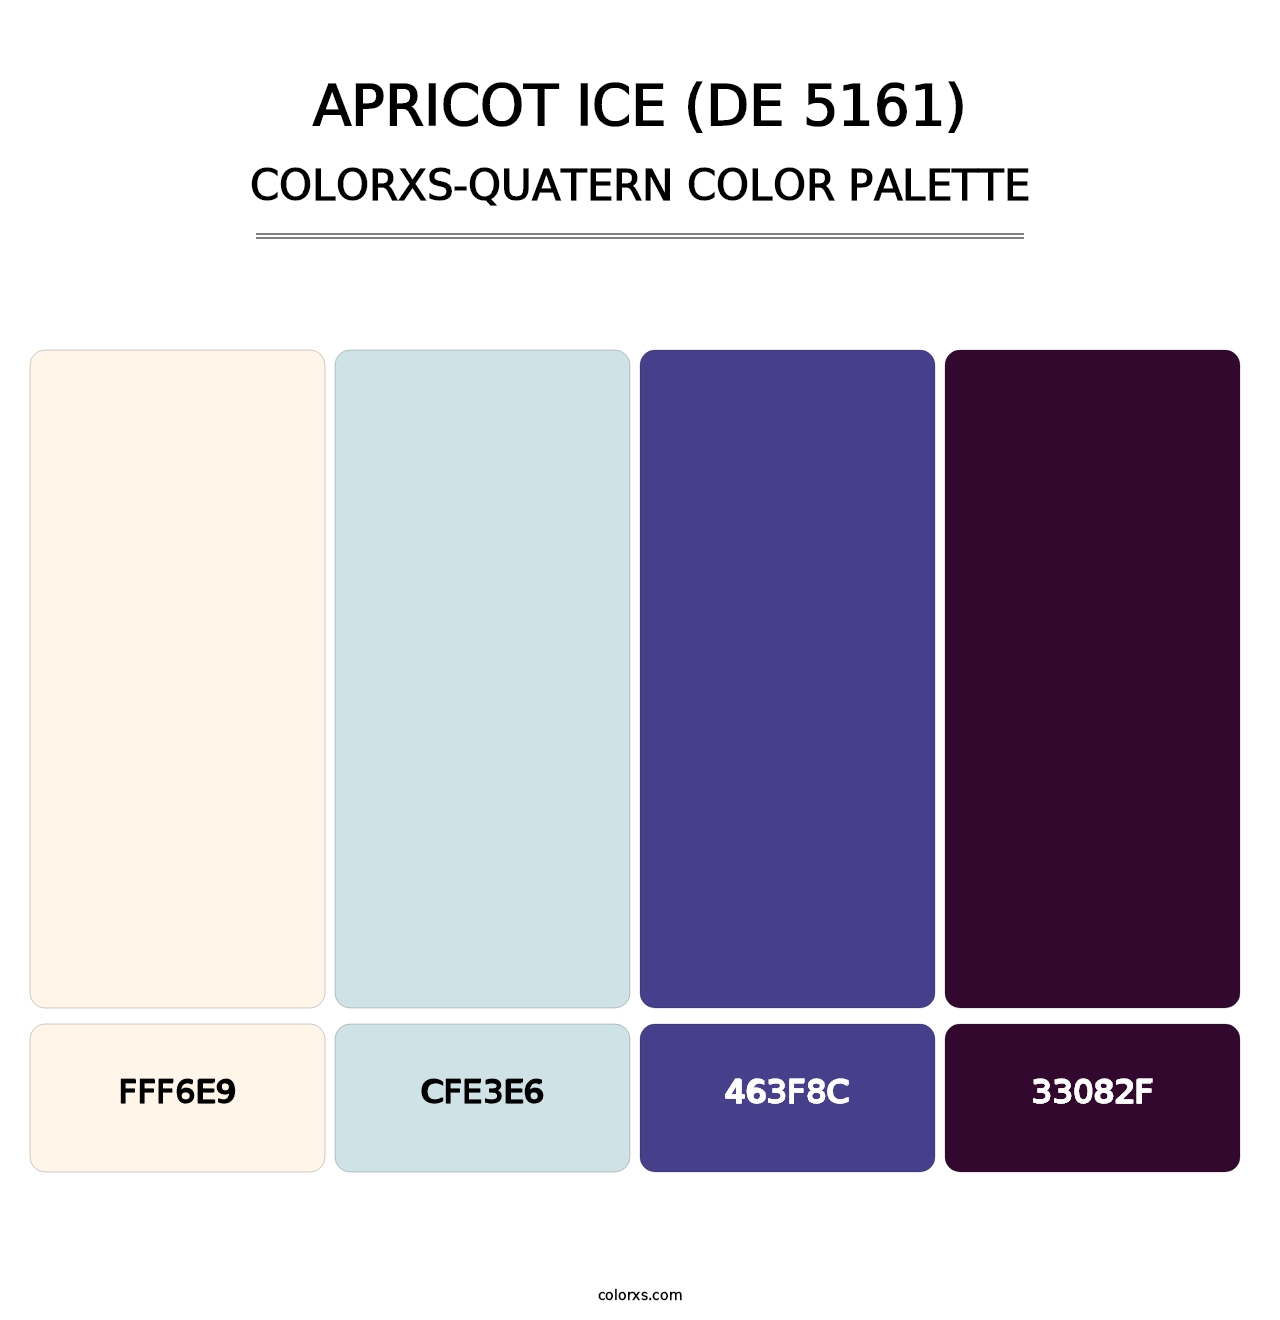 Apricot Ice (DE 5161) - Colorxs Quatern Palette